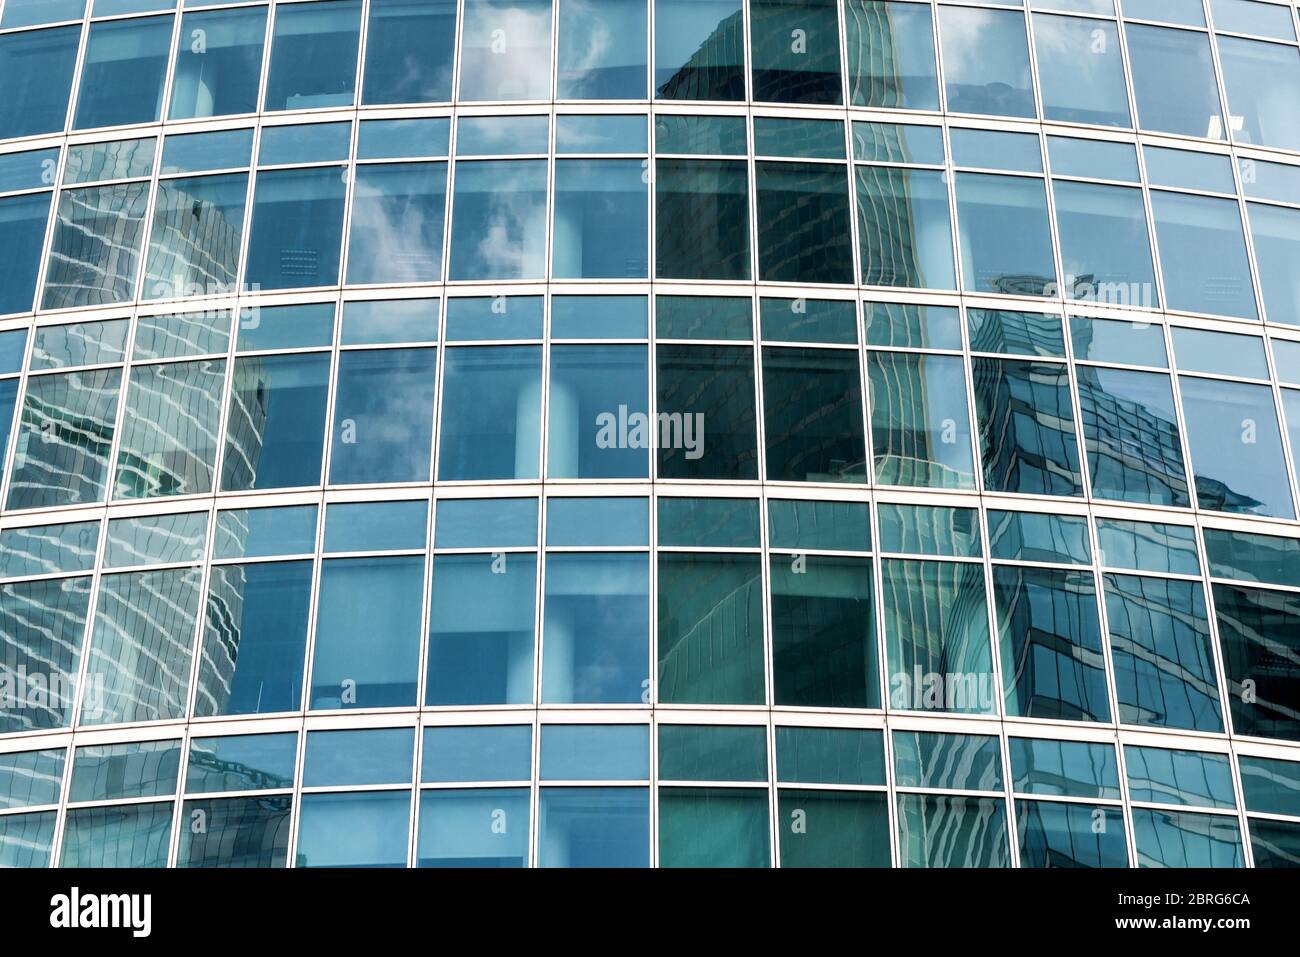 Architekturdetail des modernen Gebäudes, Glasfassade mit Reflexen Stockfoto